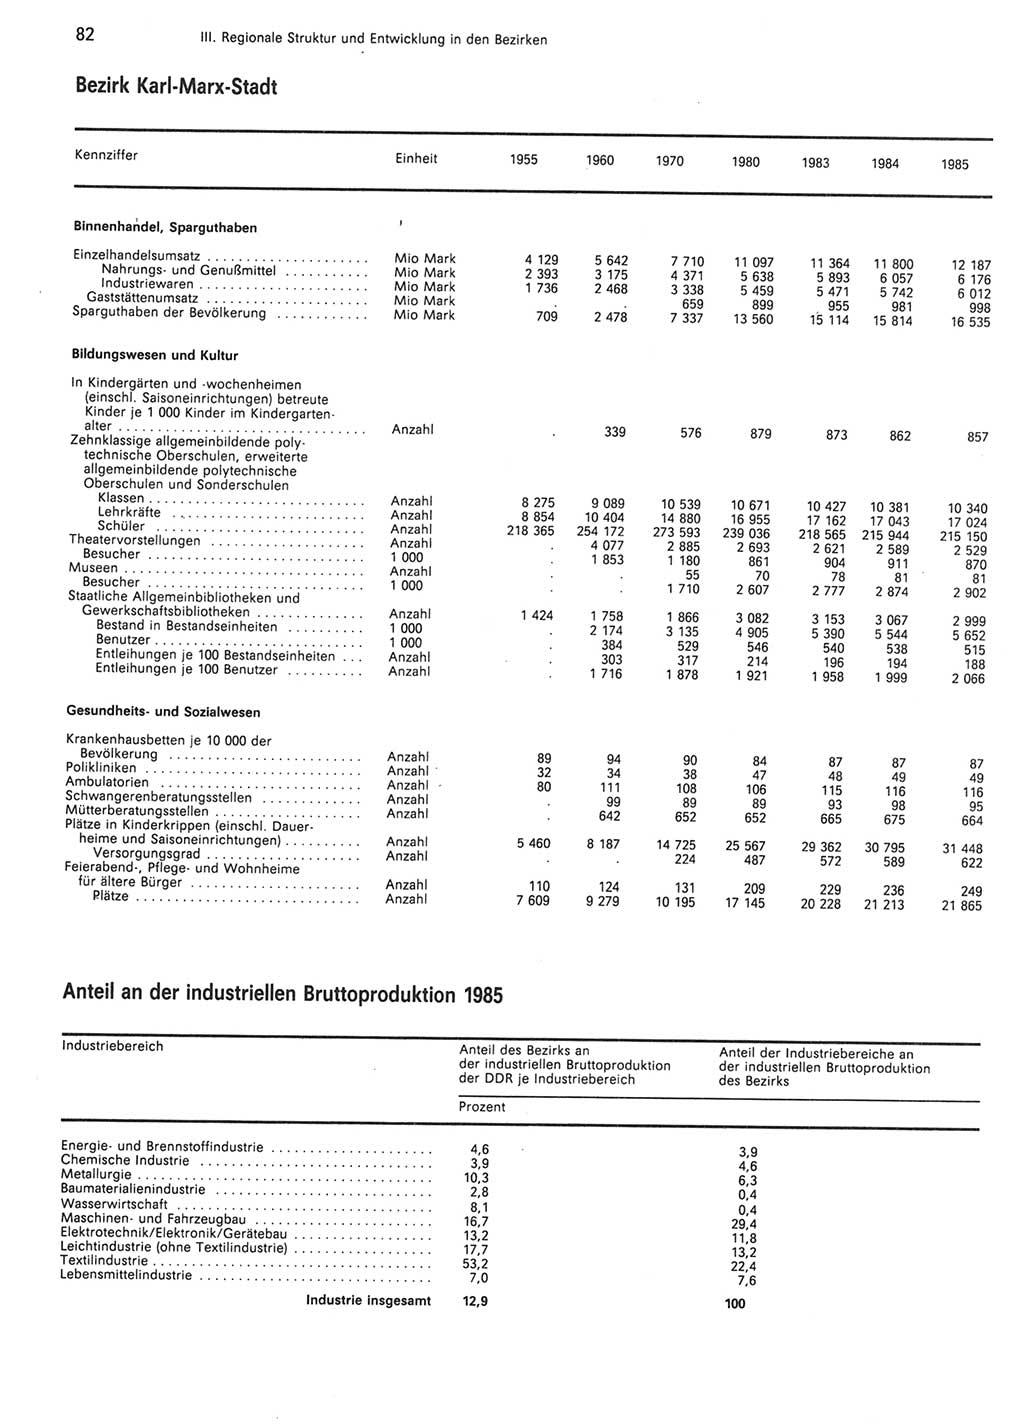 Statistisches Jahrbuch der Deutschen Demokratischen Republik (DDR) 1986, Seite 82 (Stat. Jb. DDR 1986, S. 82)